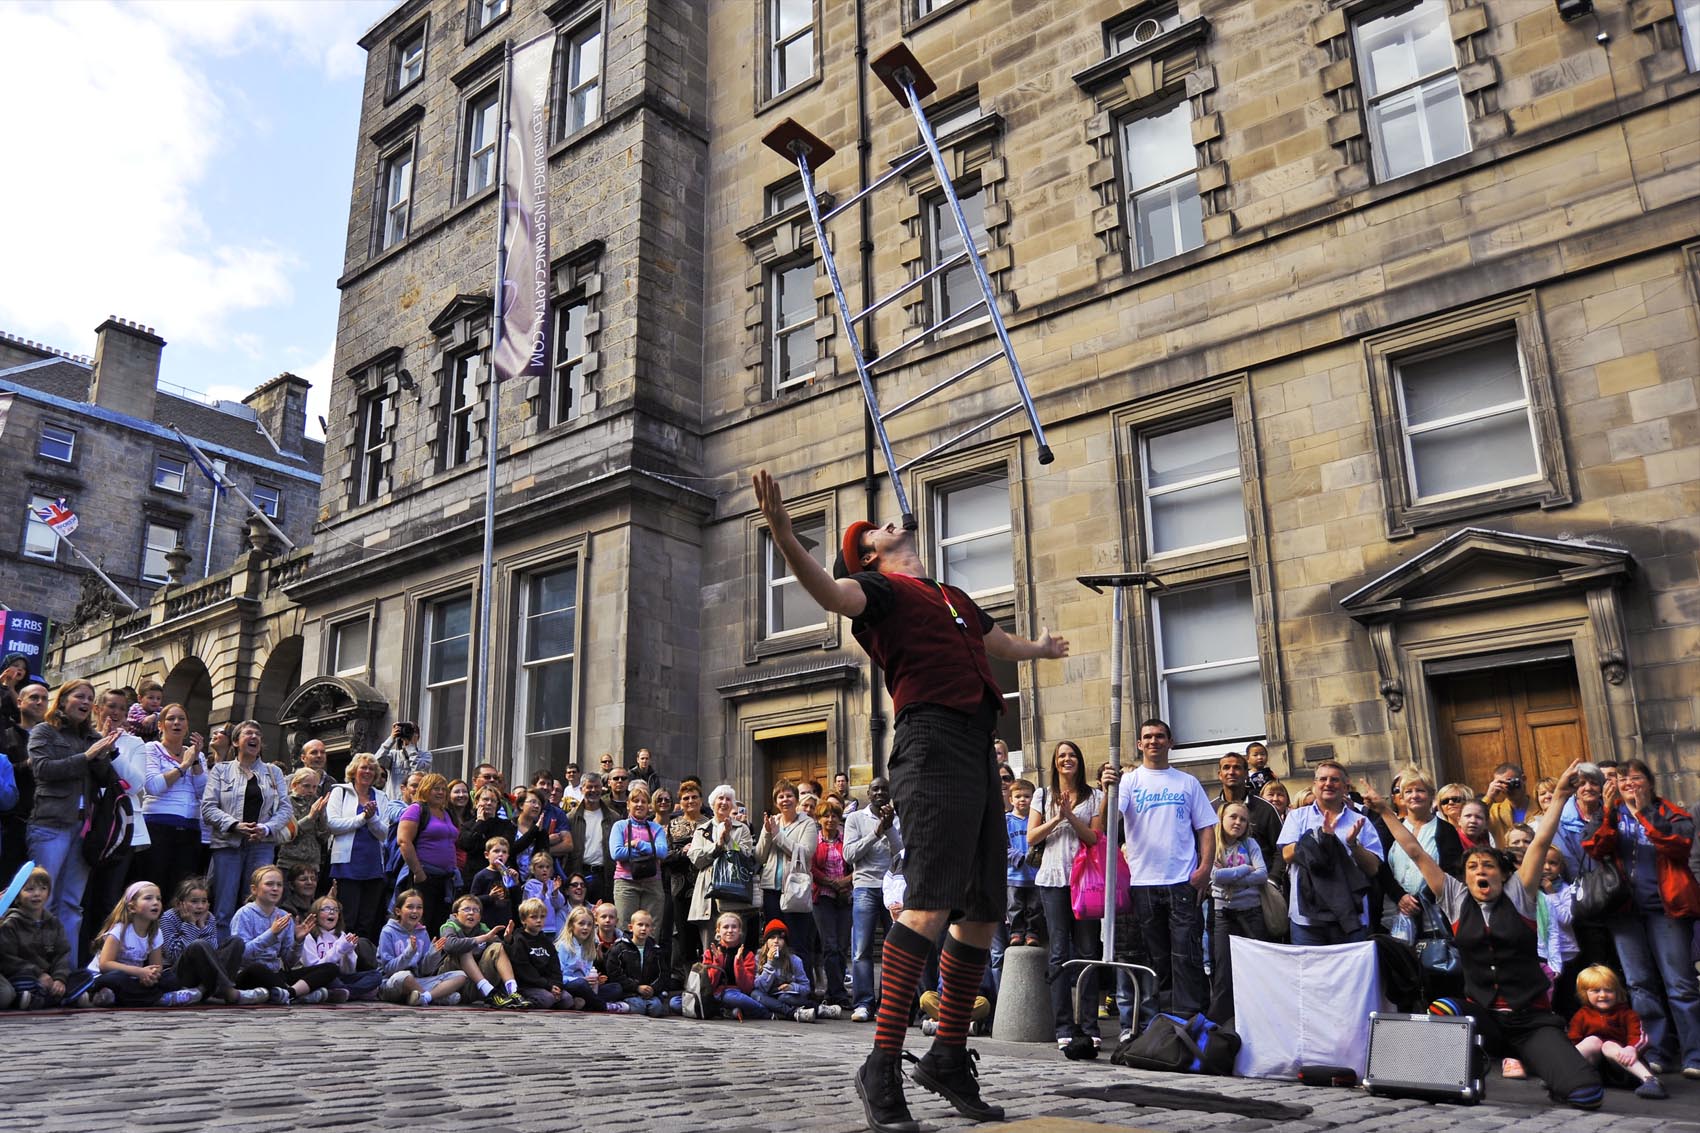 The Edinburgh Festival Fringe